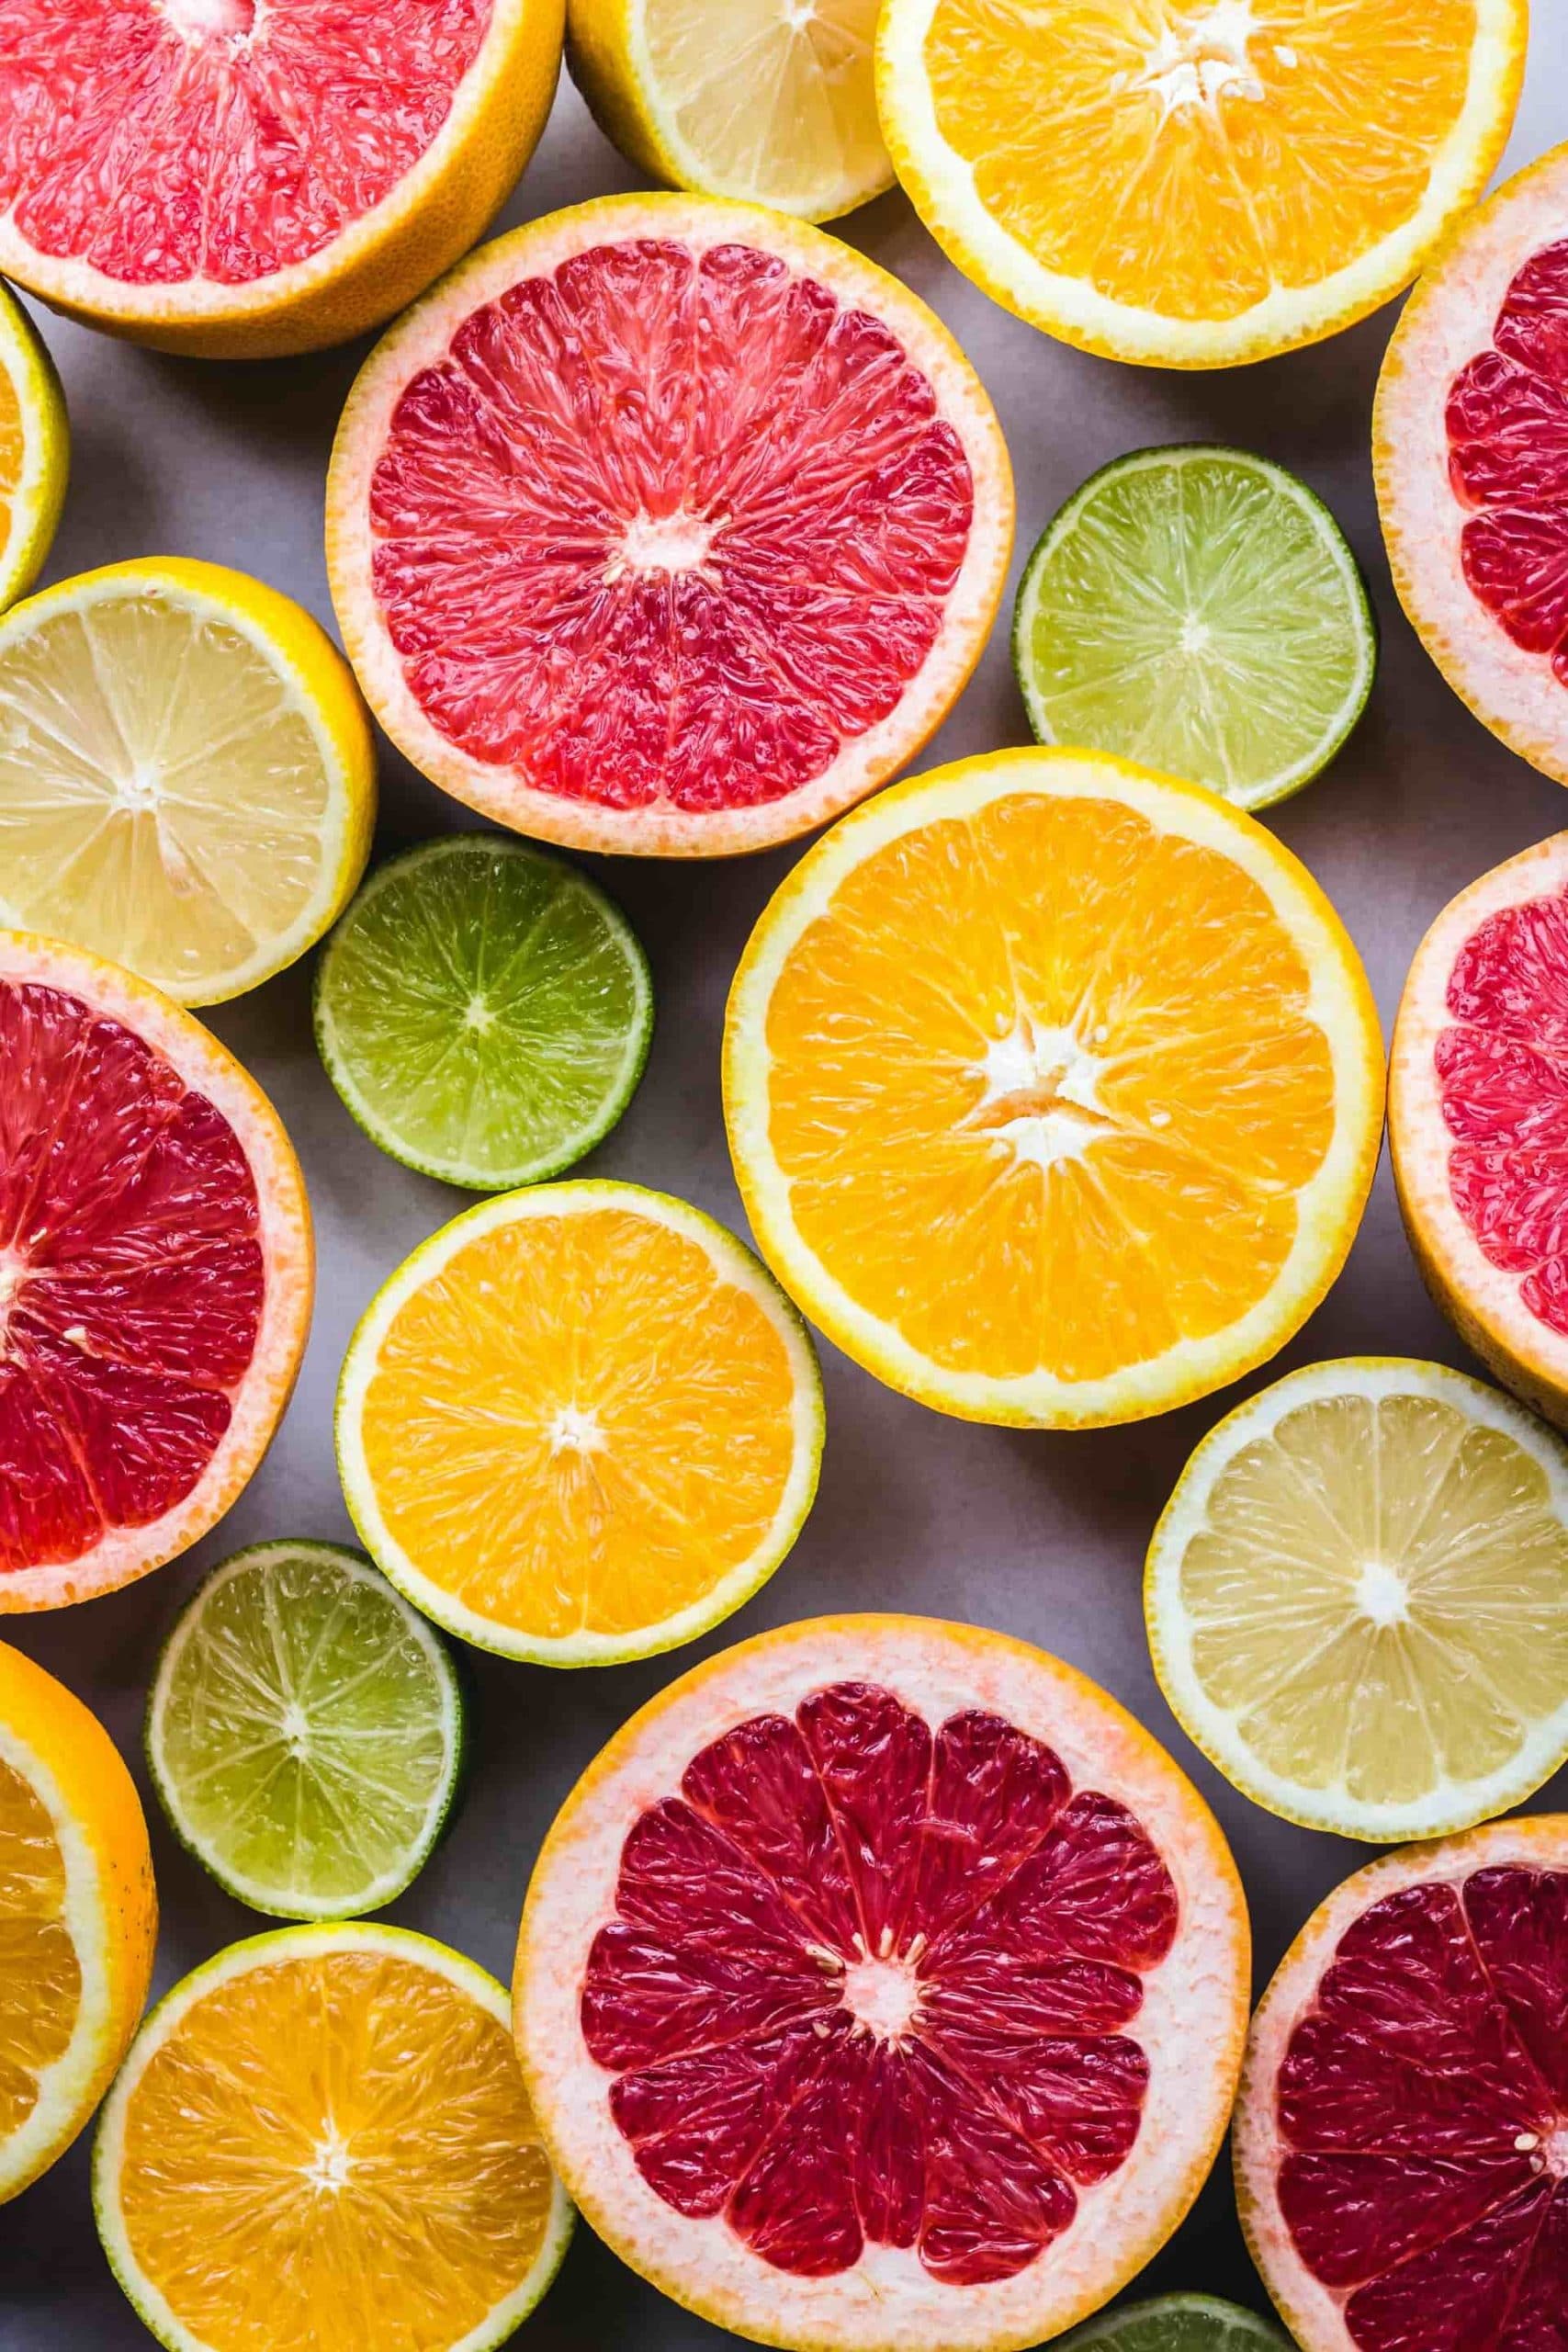 numerous citrus fruits such as grapefruit, lemons, limes, and oranges